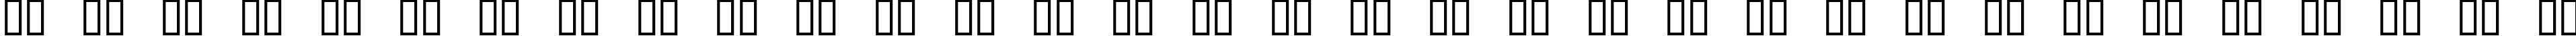 Пример написания русского алфавита шрифтом Digital Readout ExpUpright